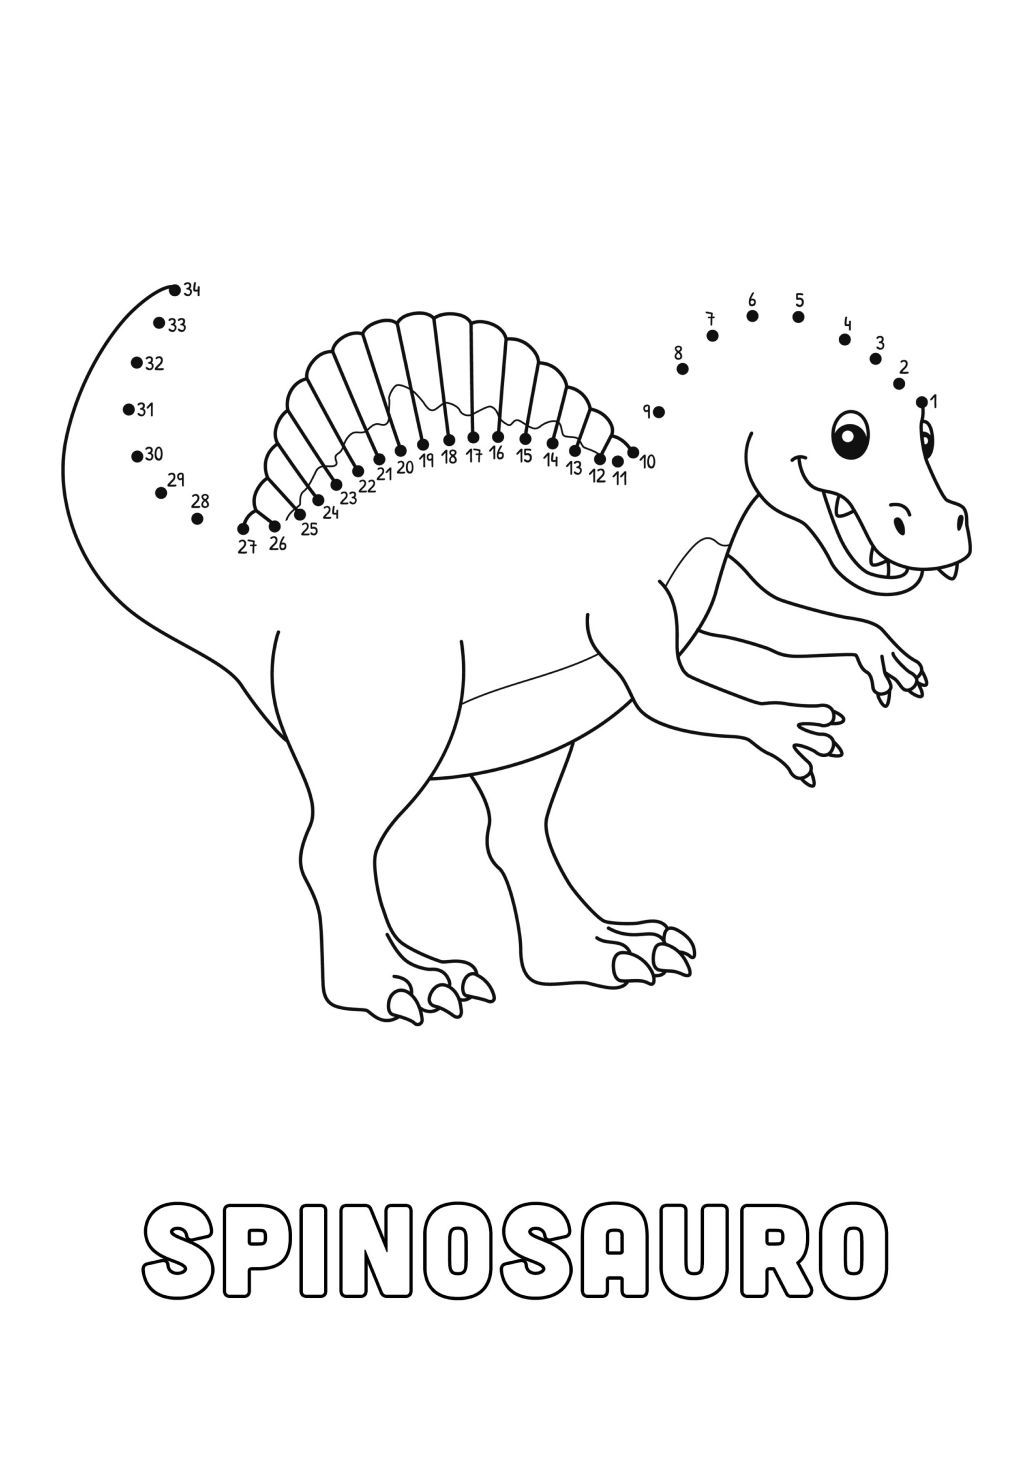 Jogo infantil ponto a ponto dinossauro